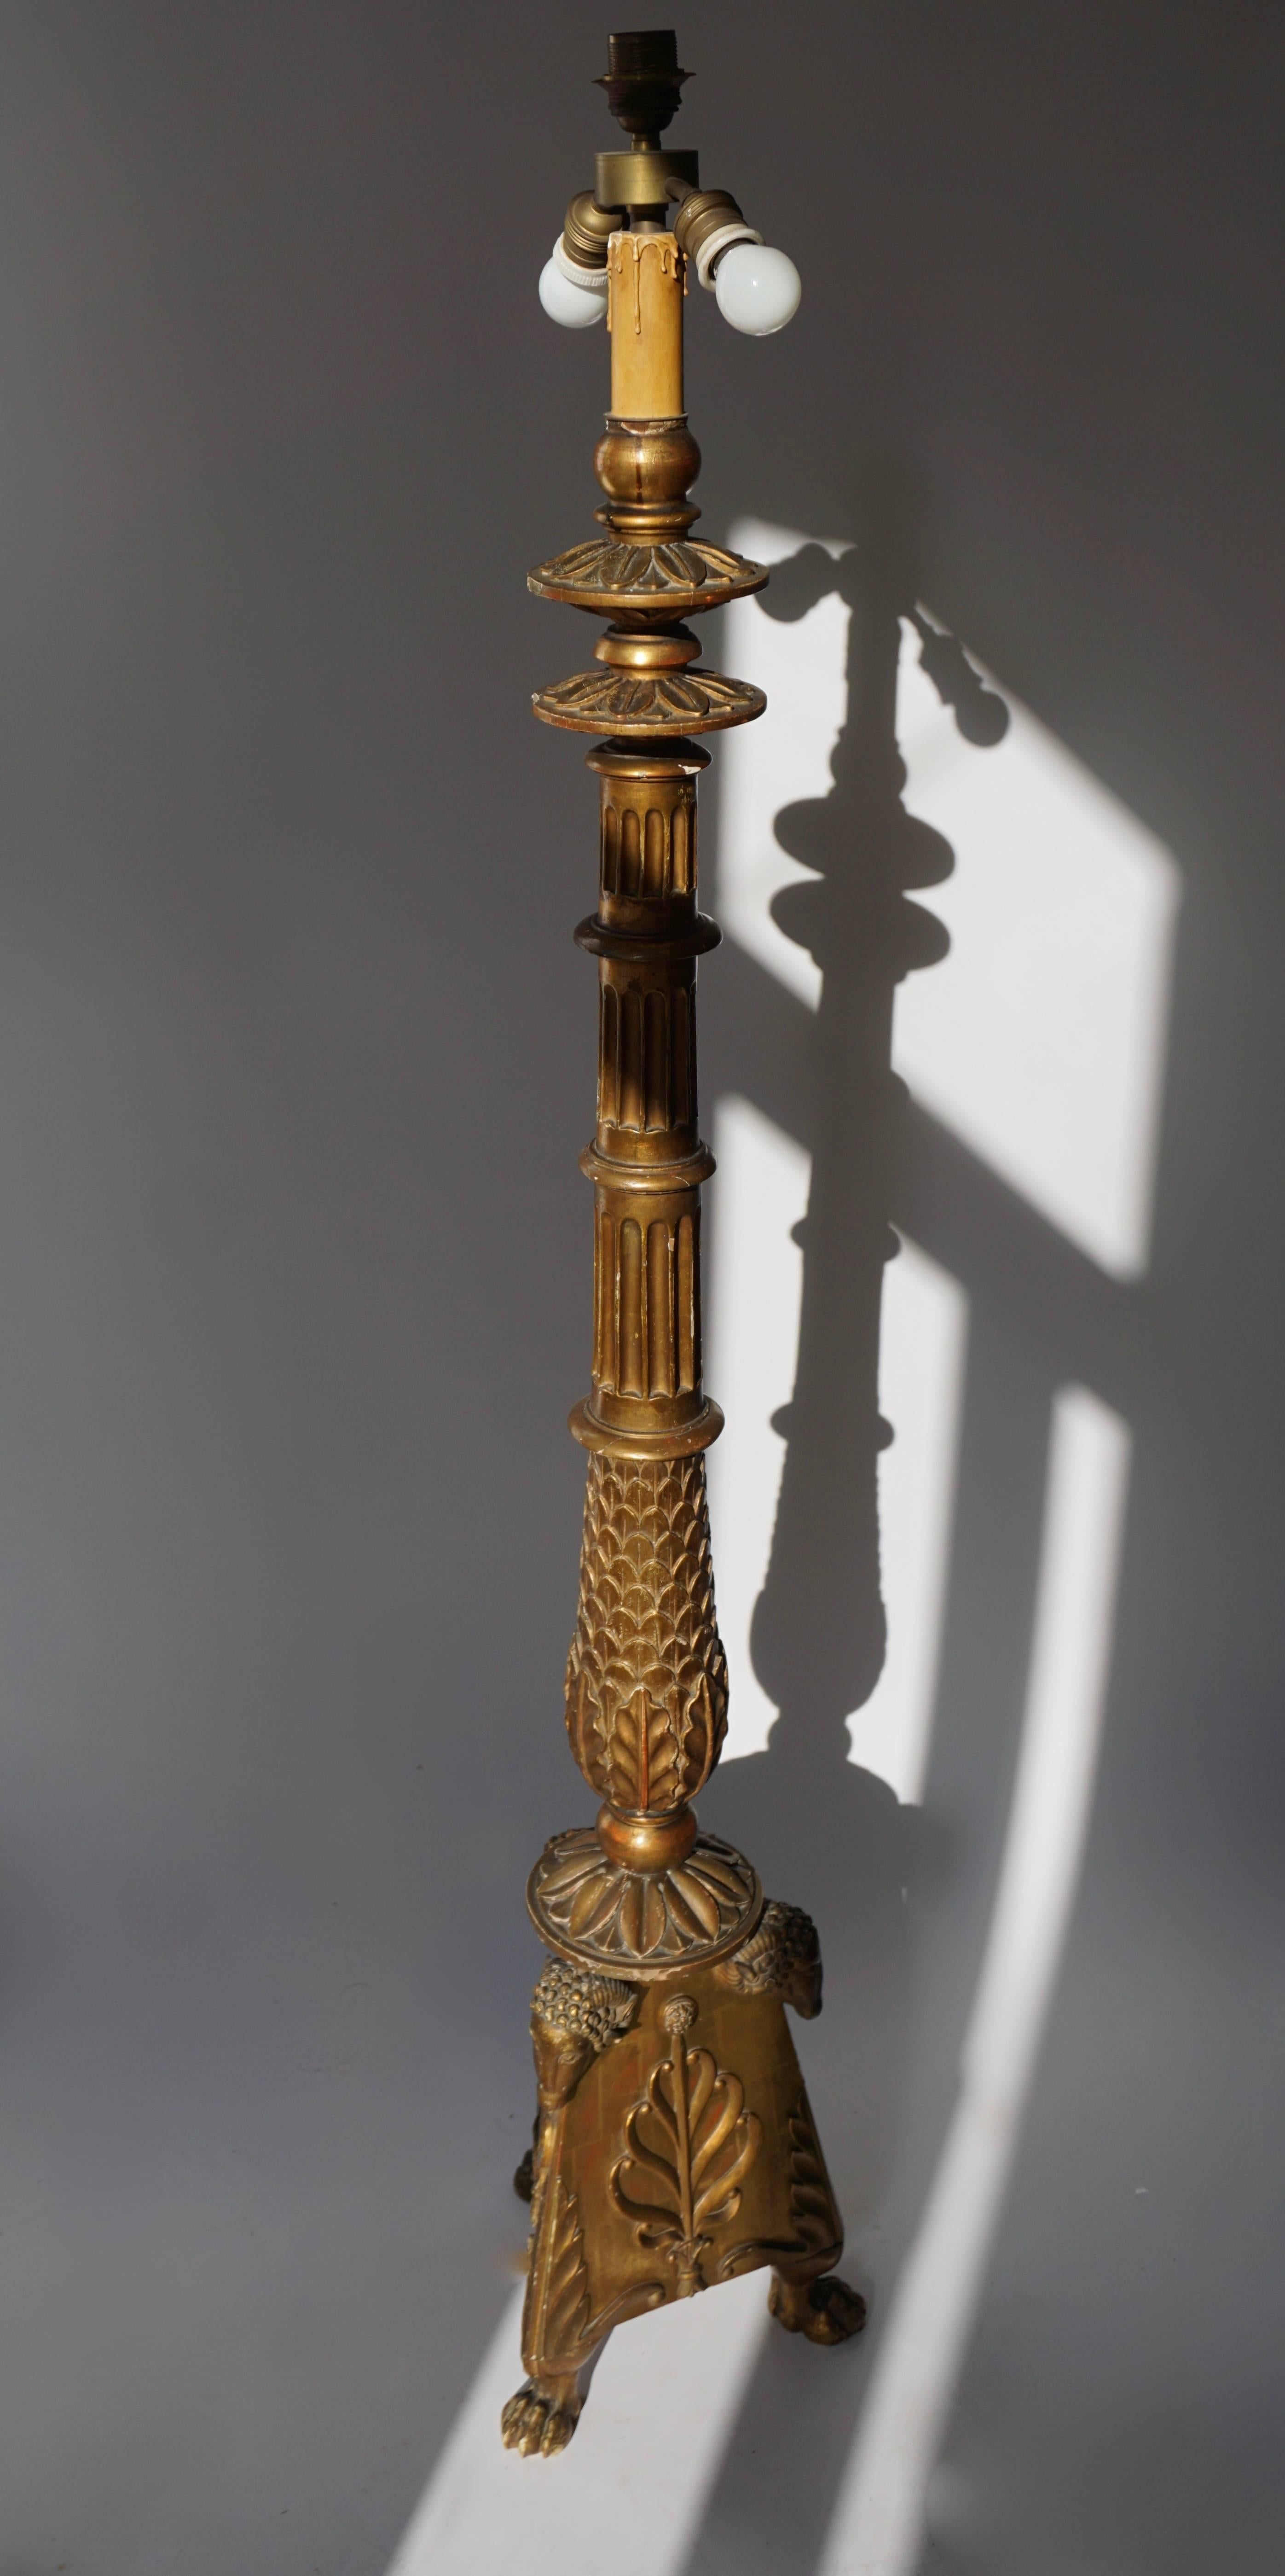 Un pied de lampe en bois doré sculpté en forme de candélabre, de style néoclassique renaissance grecque, reposant sur des pieds griffes, la base décorée de têtes de bélier saillantes et de palmettes, milieu du 20e siècle.

La hauteur sans abat-jour